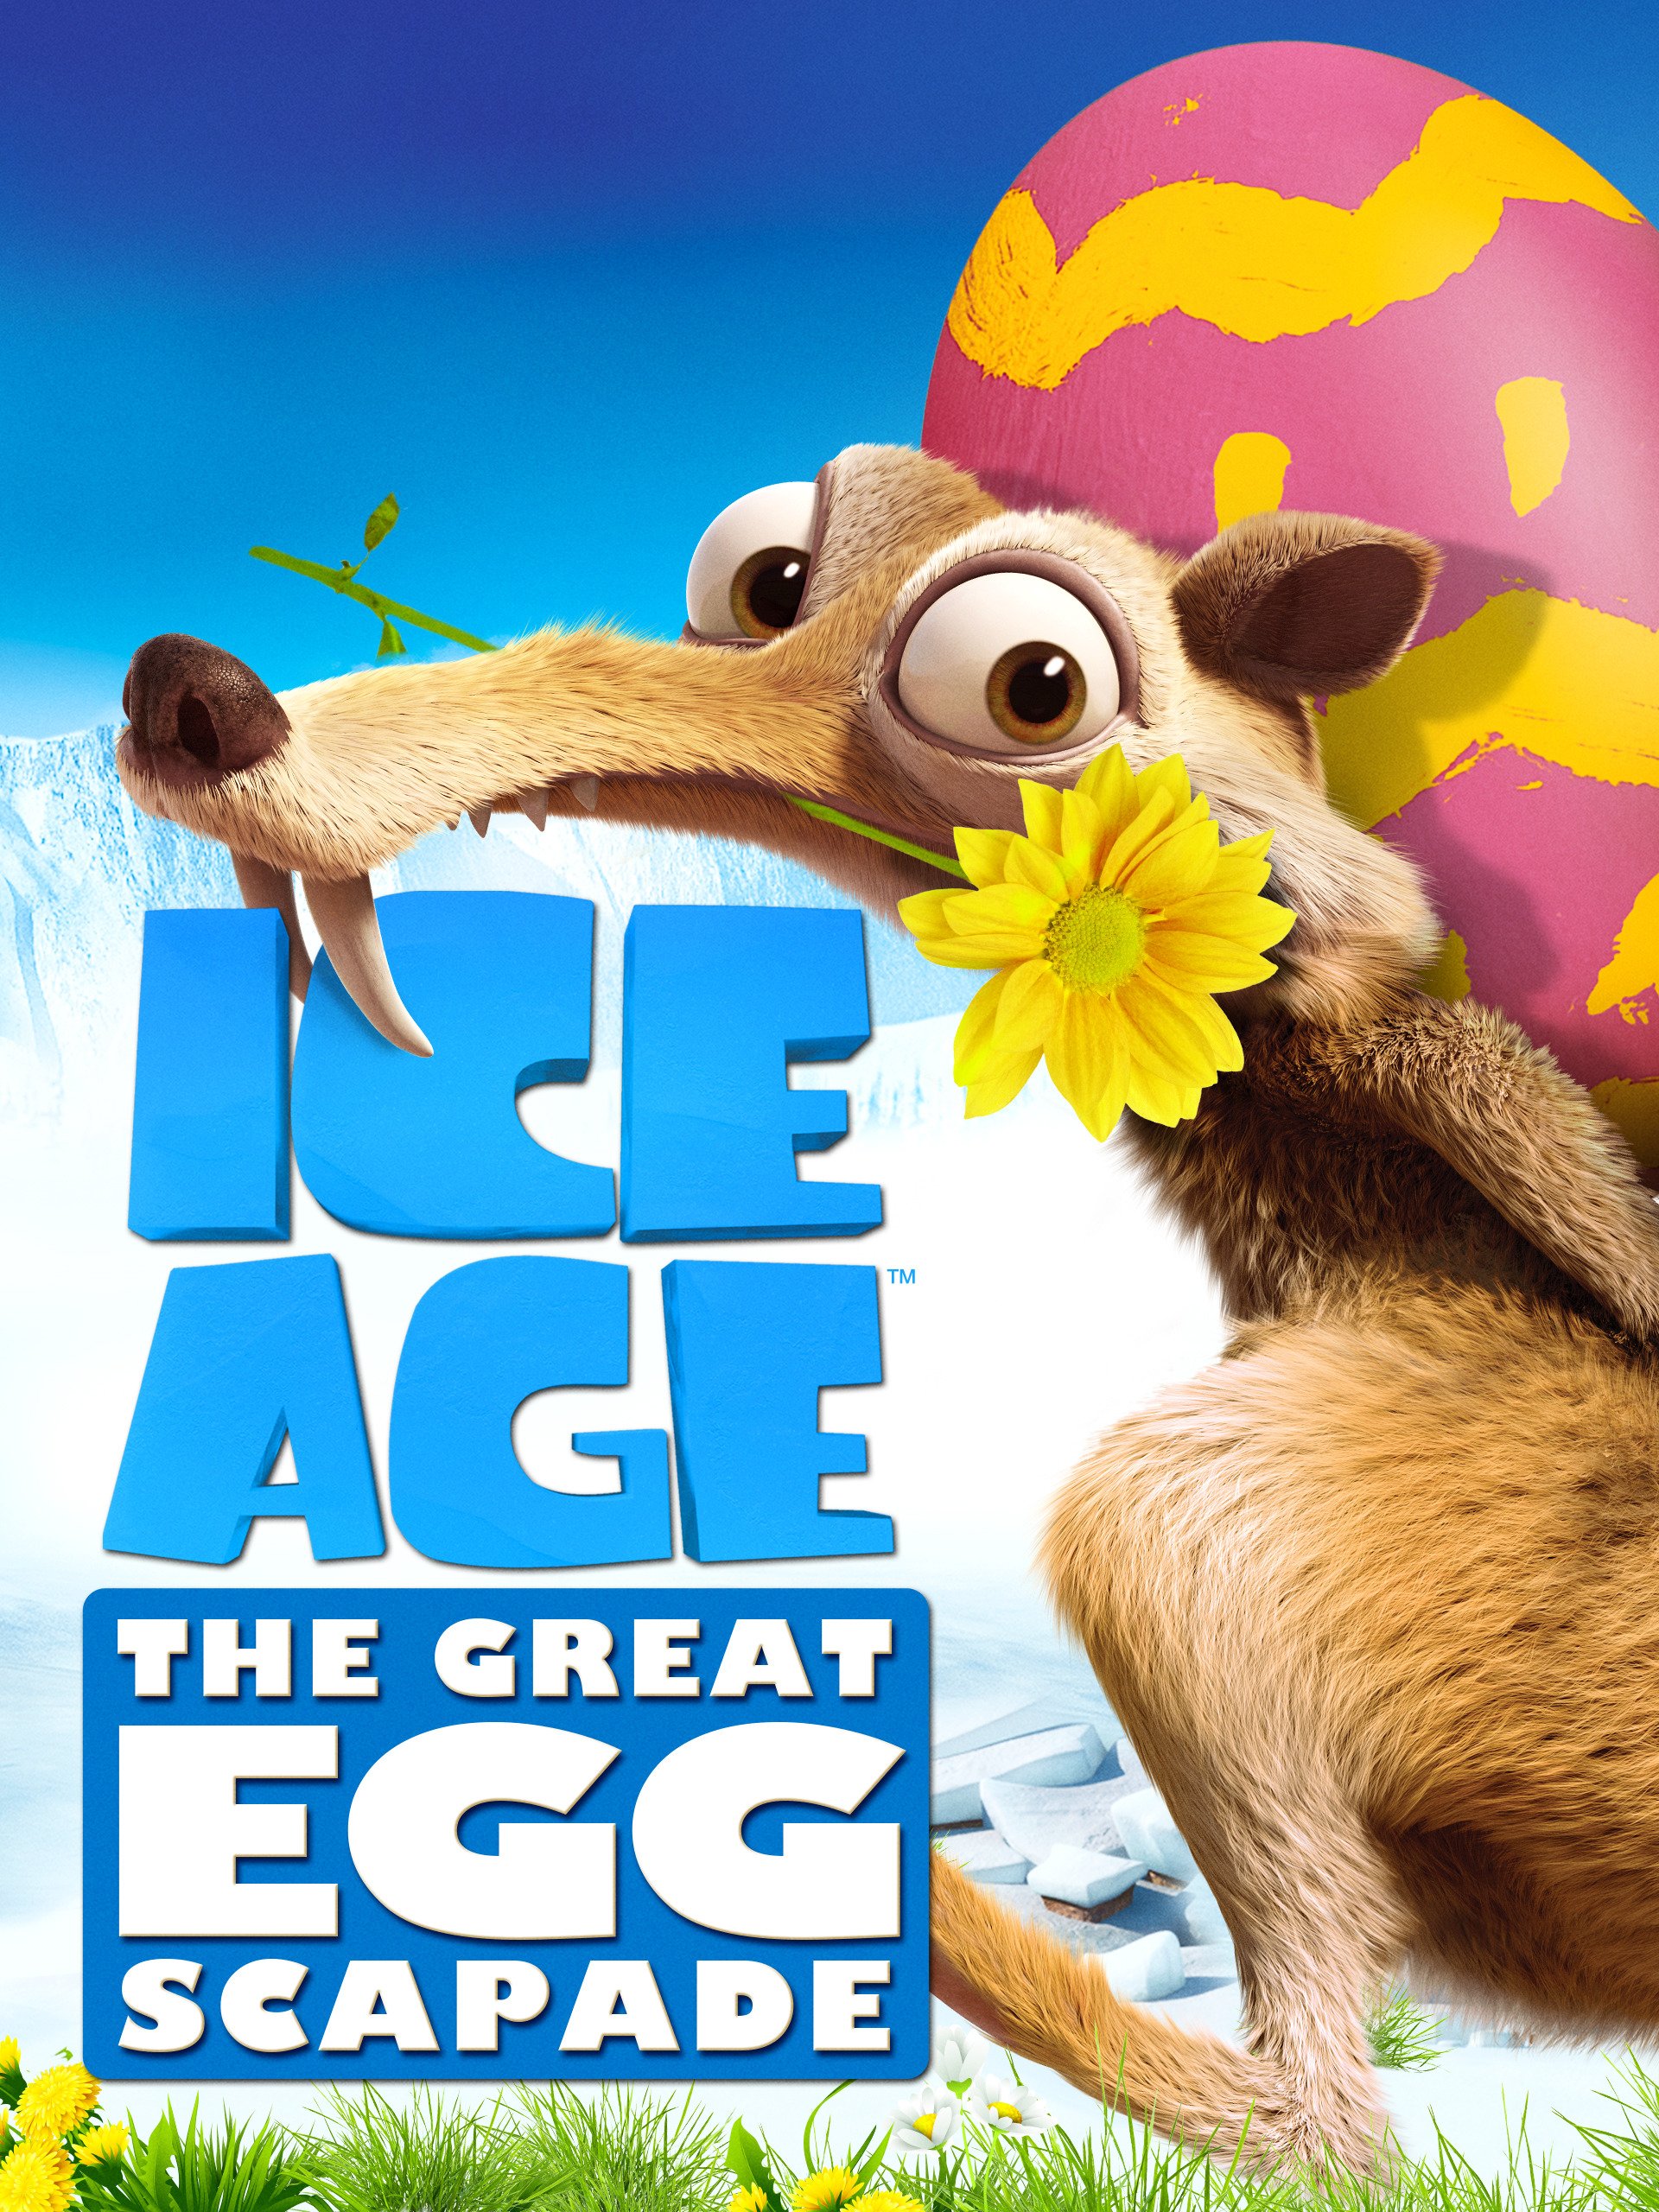 ดูหนังออนไลน์ฟรี ICE AGE THE GREAT EGG-SCAPADE (2016) ไอซ์ เอจ เจาะยุคน้ำแข็งมหัศจรรย์ หนังเต็มเรื่อง หนังมาสเตอร์ ดูหนังHD ดูหนังออนไลน์ ดูหนังใหม่